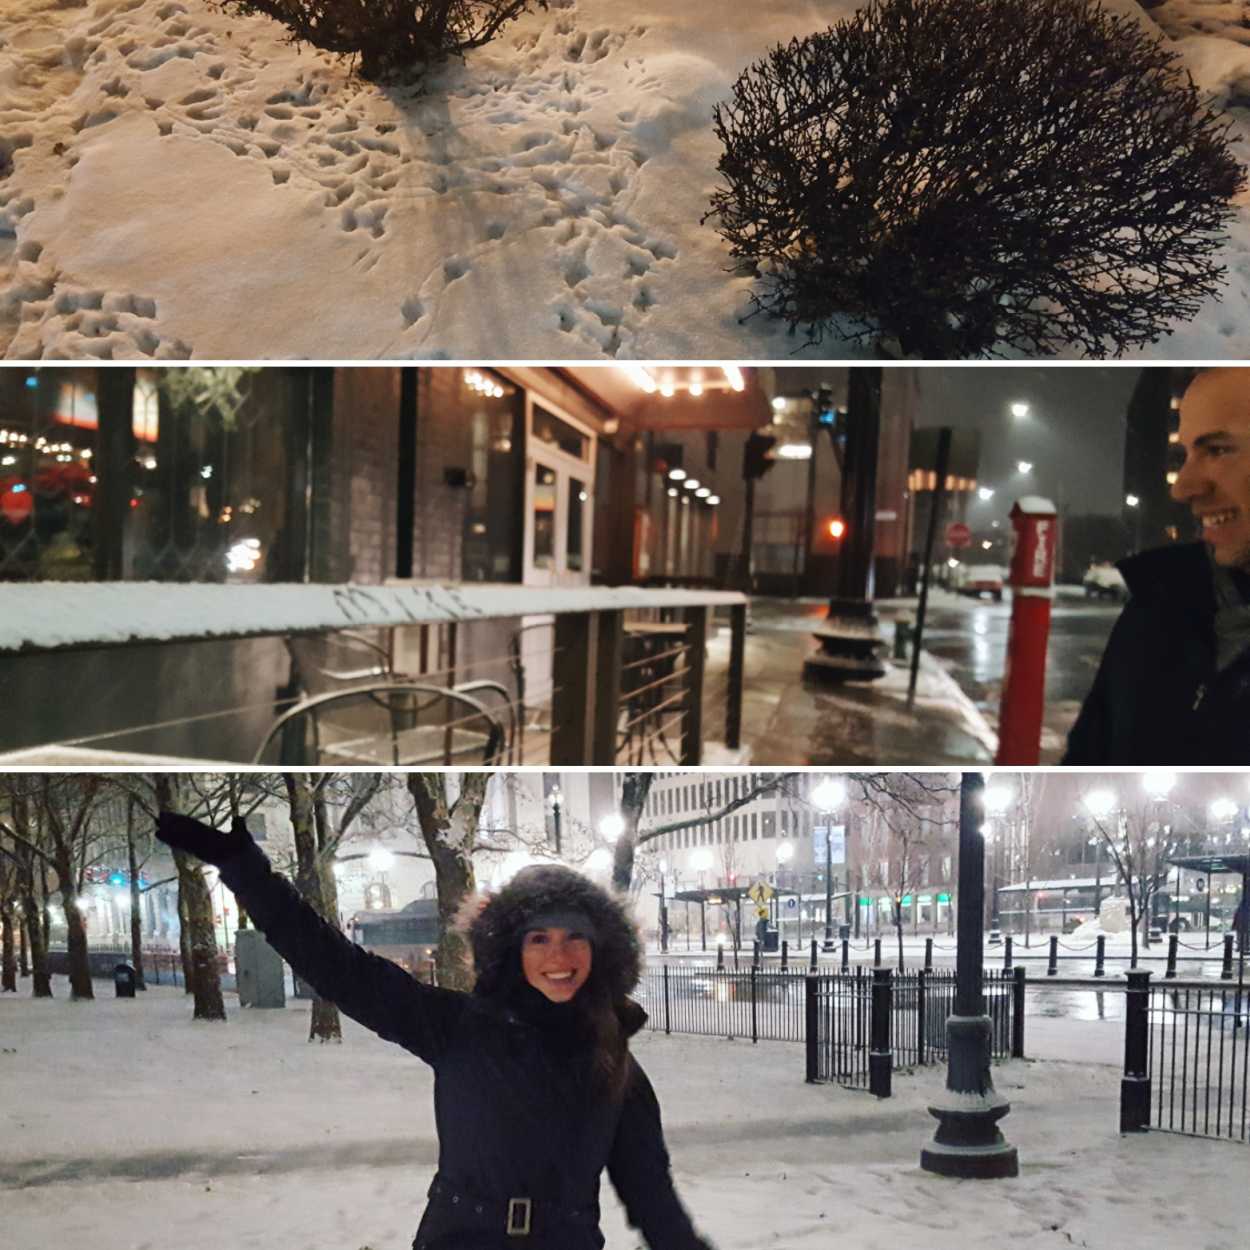 Snowy scenes in Providence